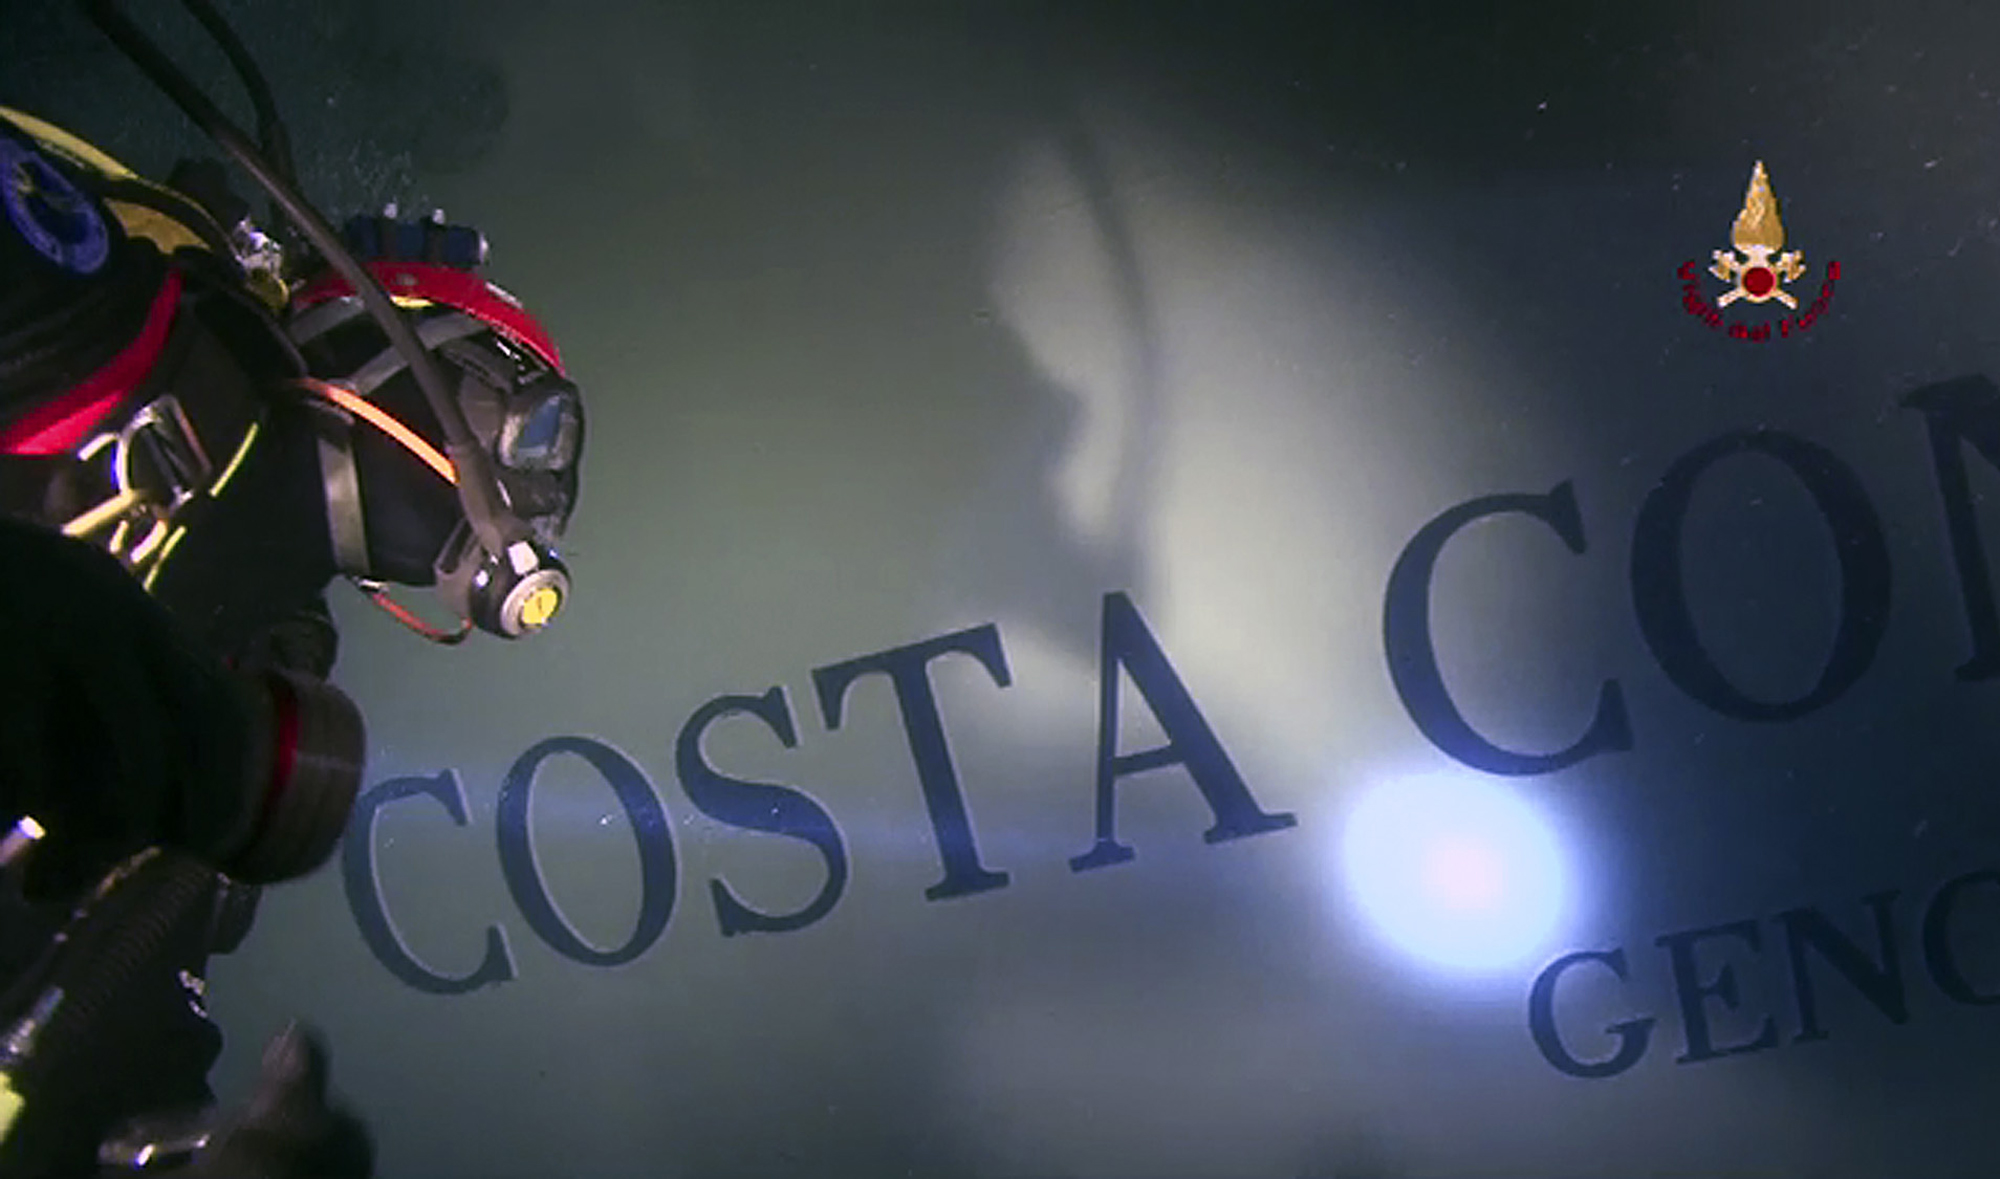 Vraket av Costa Concordia.